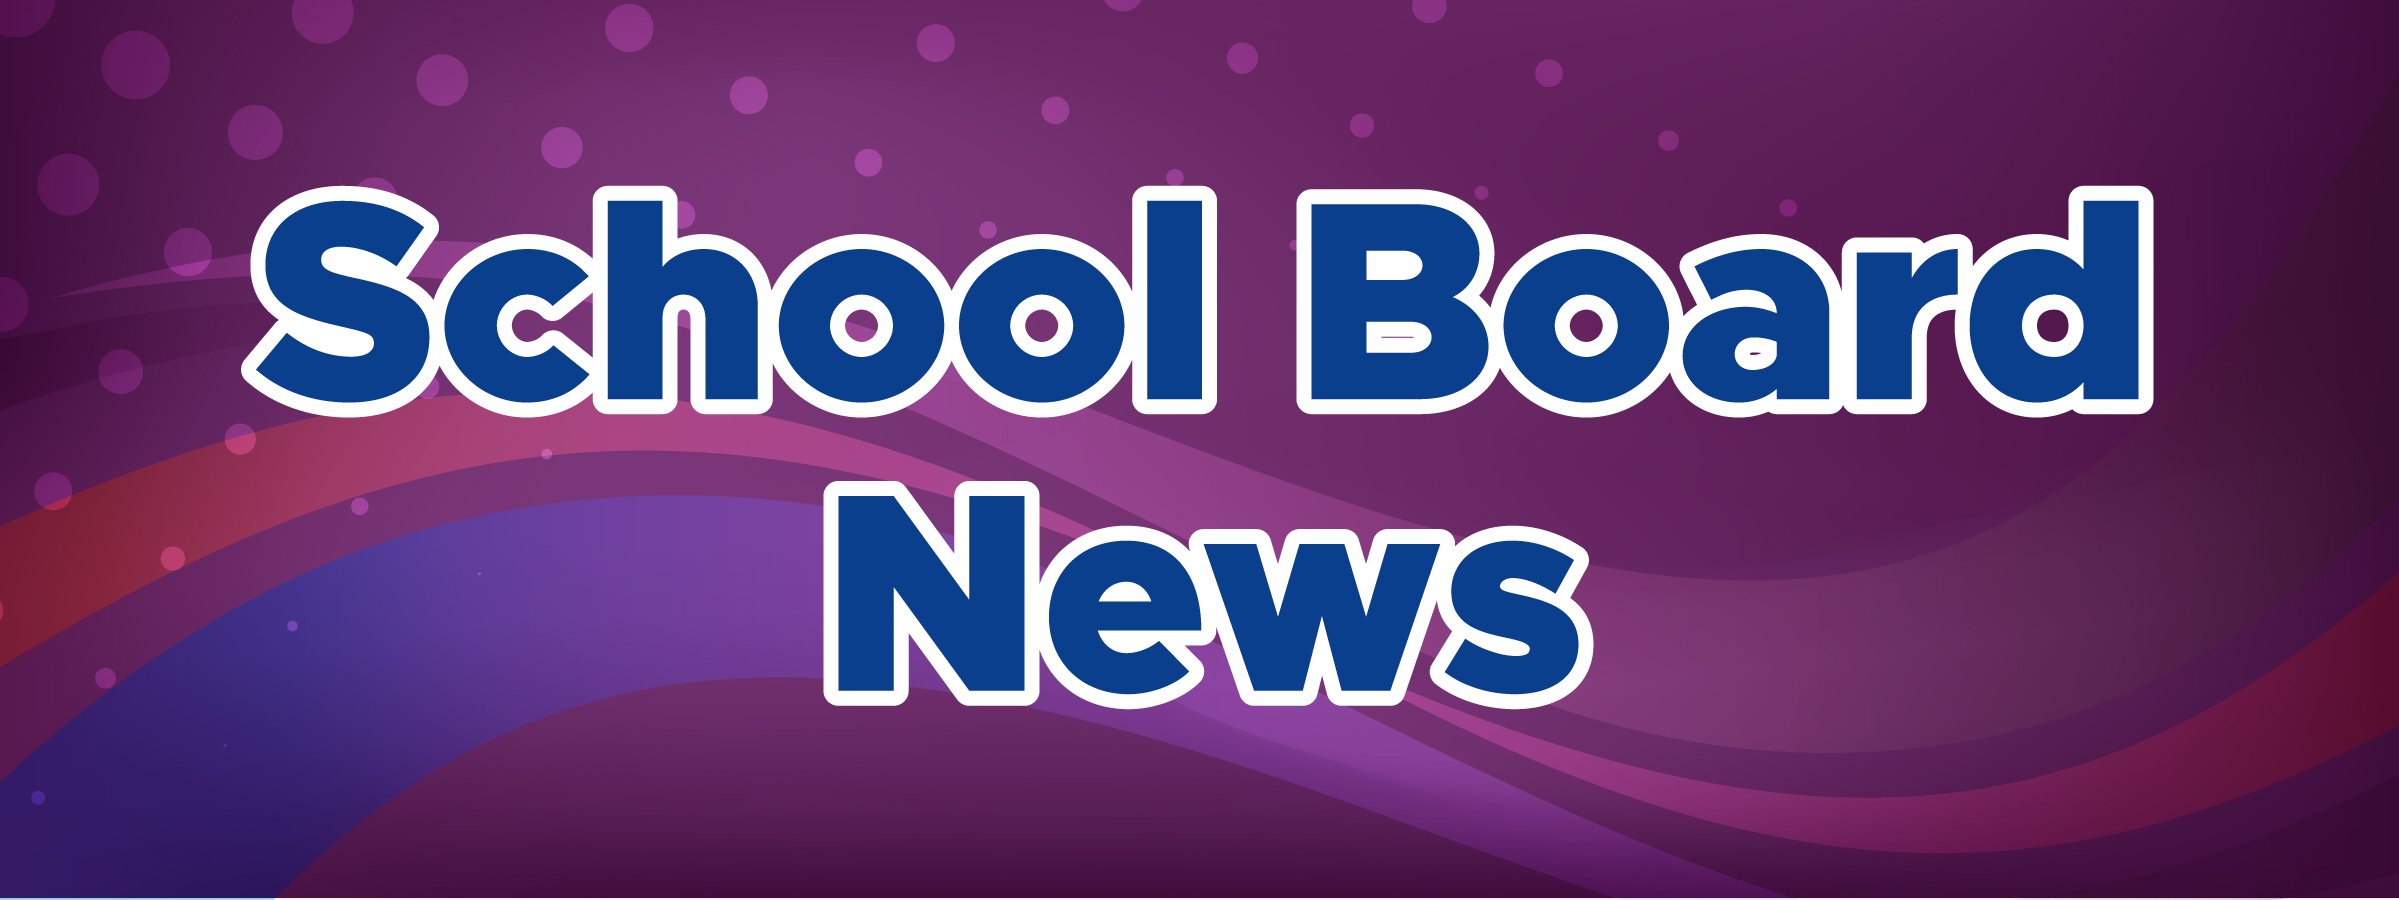 School Board News Purple Image